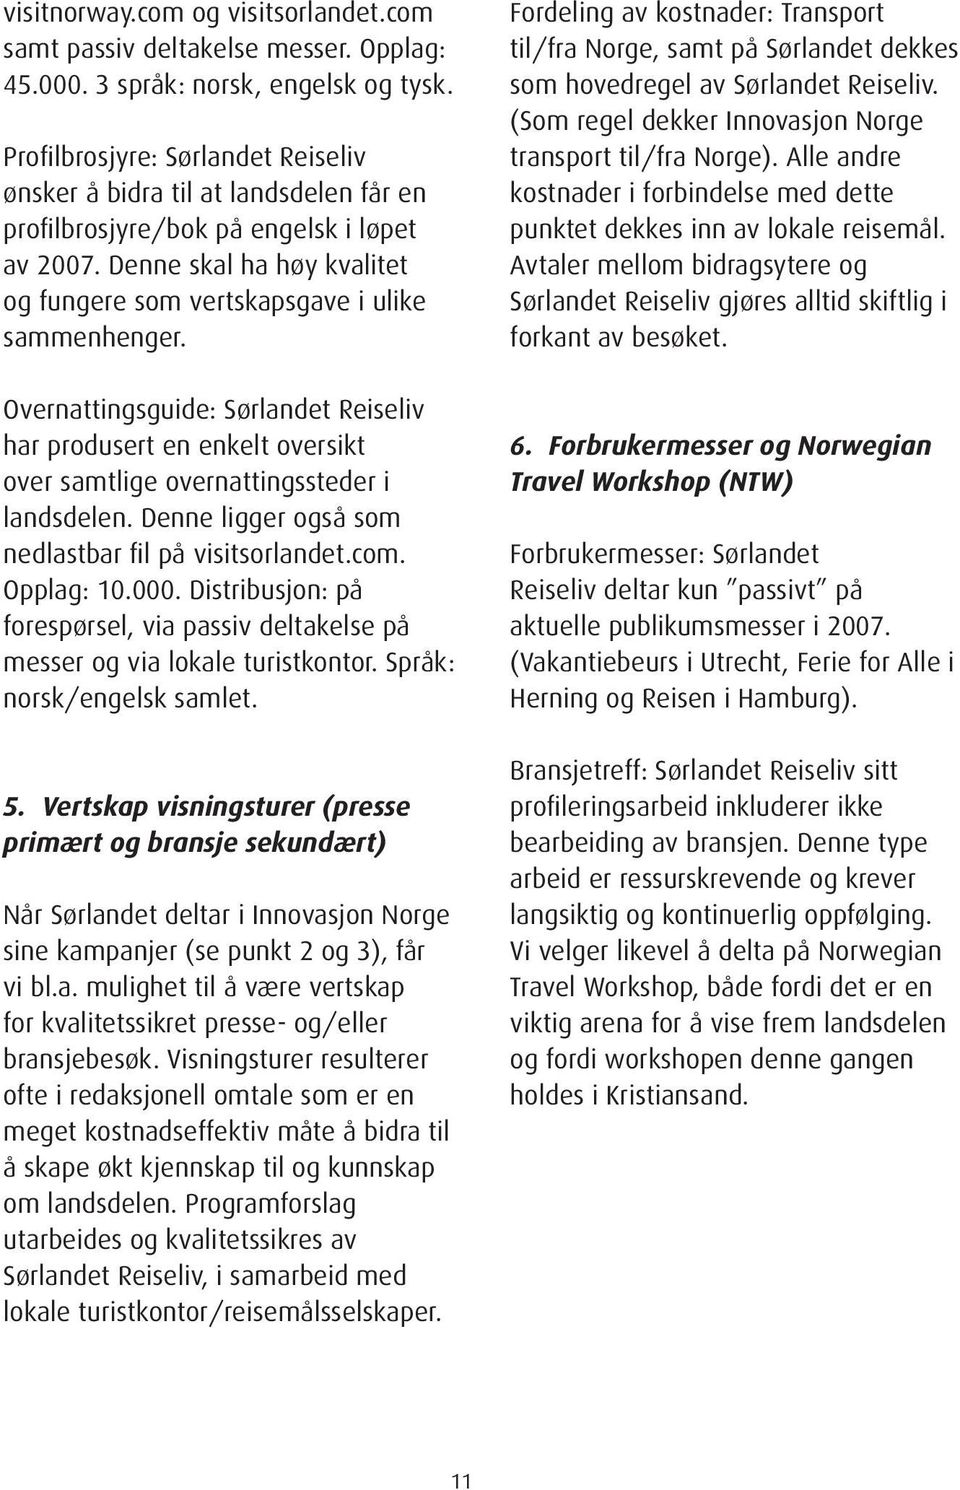 Overnattingsguide: Sørlandet Reiseliv har produsert en enkelt oversikt over samtlige overnattingssteder i landsdelen. Denne ligger også som nedlastbar fil på visitsorlandet.com. Opplag: 10.000.